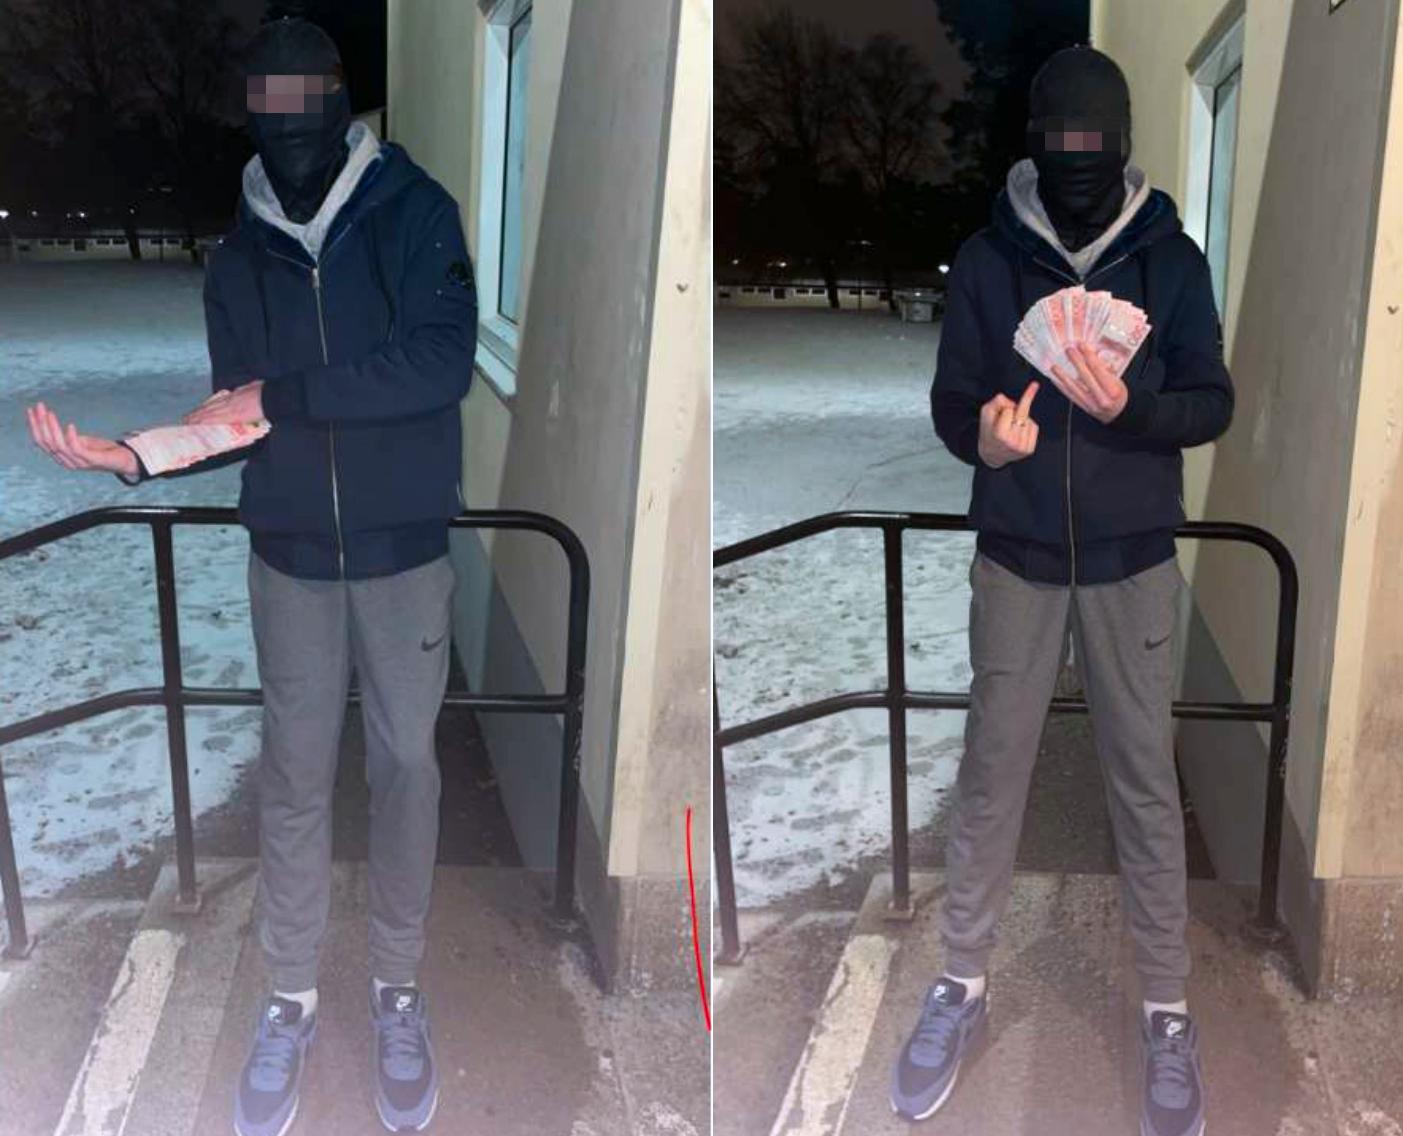 16-åringen poserar med sedlar på mobilbilder. Polisen misstänker att han fått pengarna i ersättning för mordet. 